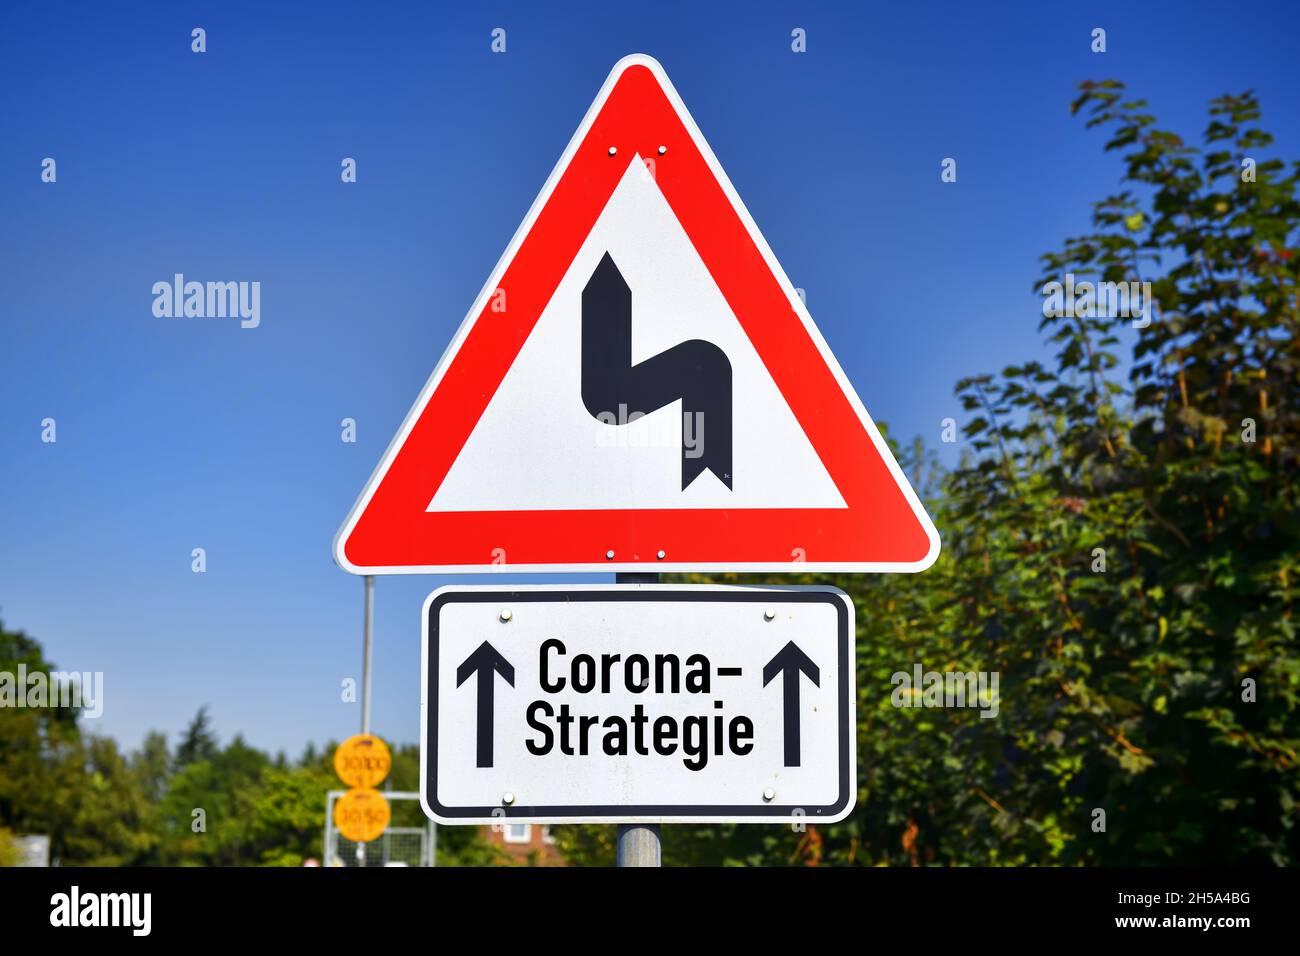 FOTOMONTAGE, Schild mit KurvenSymbol und Aufschrift Corona-Strategie, Symbolfoto fuer Schlingerkurs in der Corona-Pandemiebekaempfung Banque D'Images